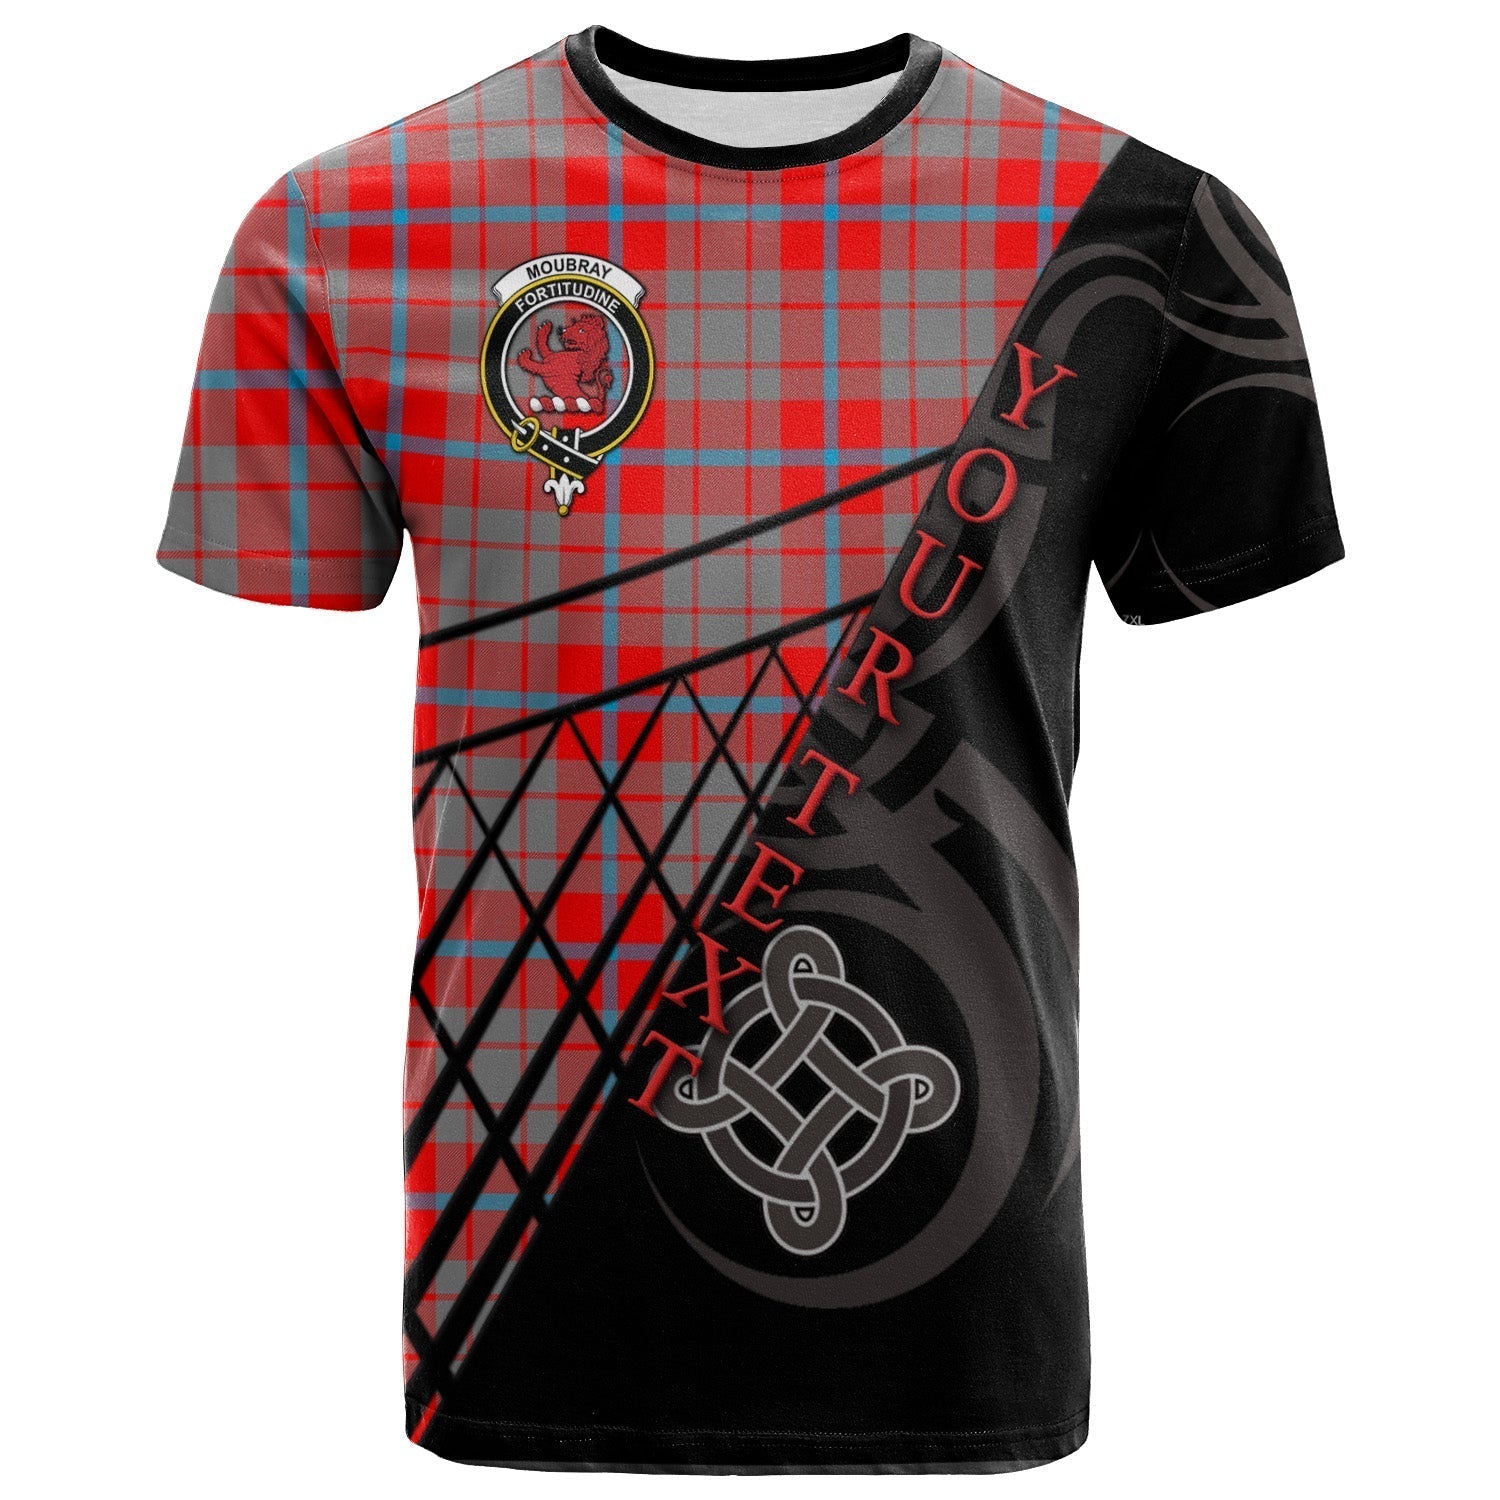 scottish-moubray-clan-crest-tartan-pattern-celtic-t-shirt